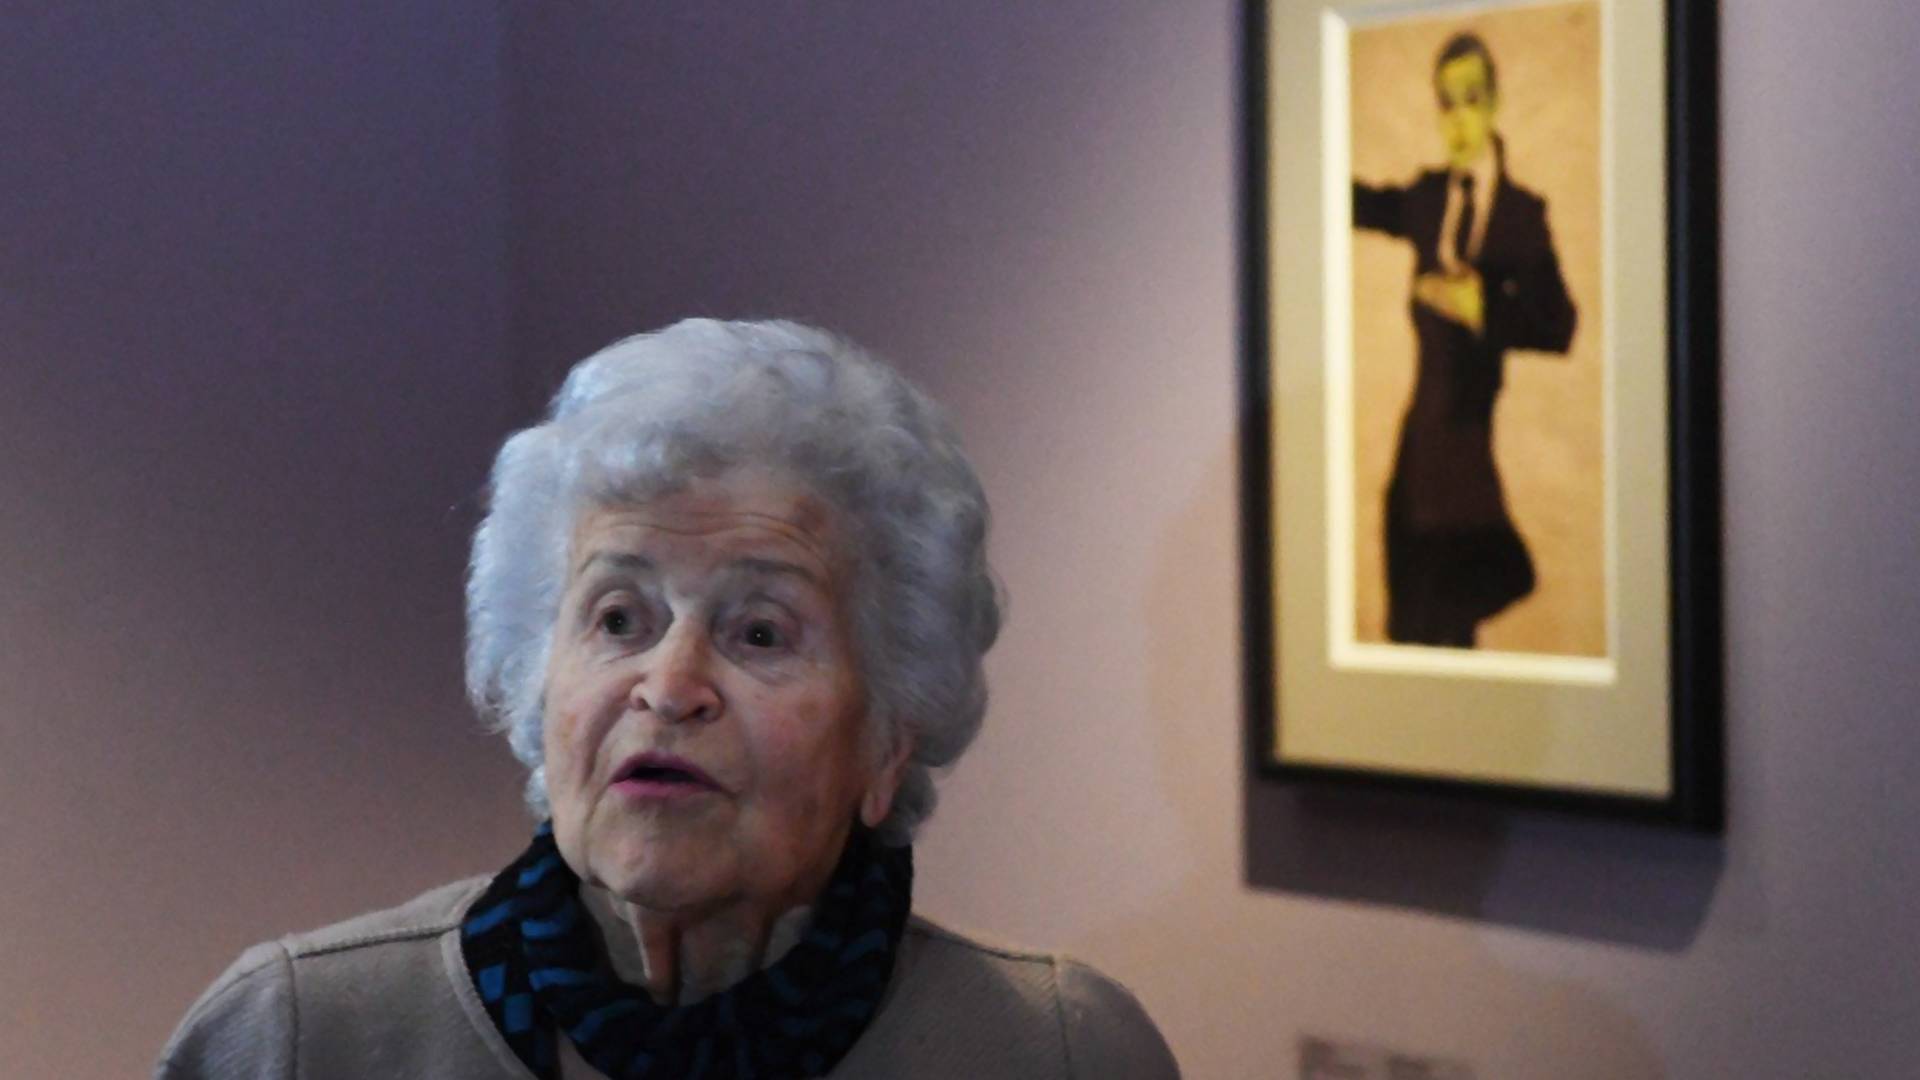 Ukradeno delo Gustava Klimta pronađeno u ormanu jedne penzionerke